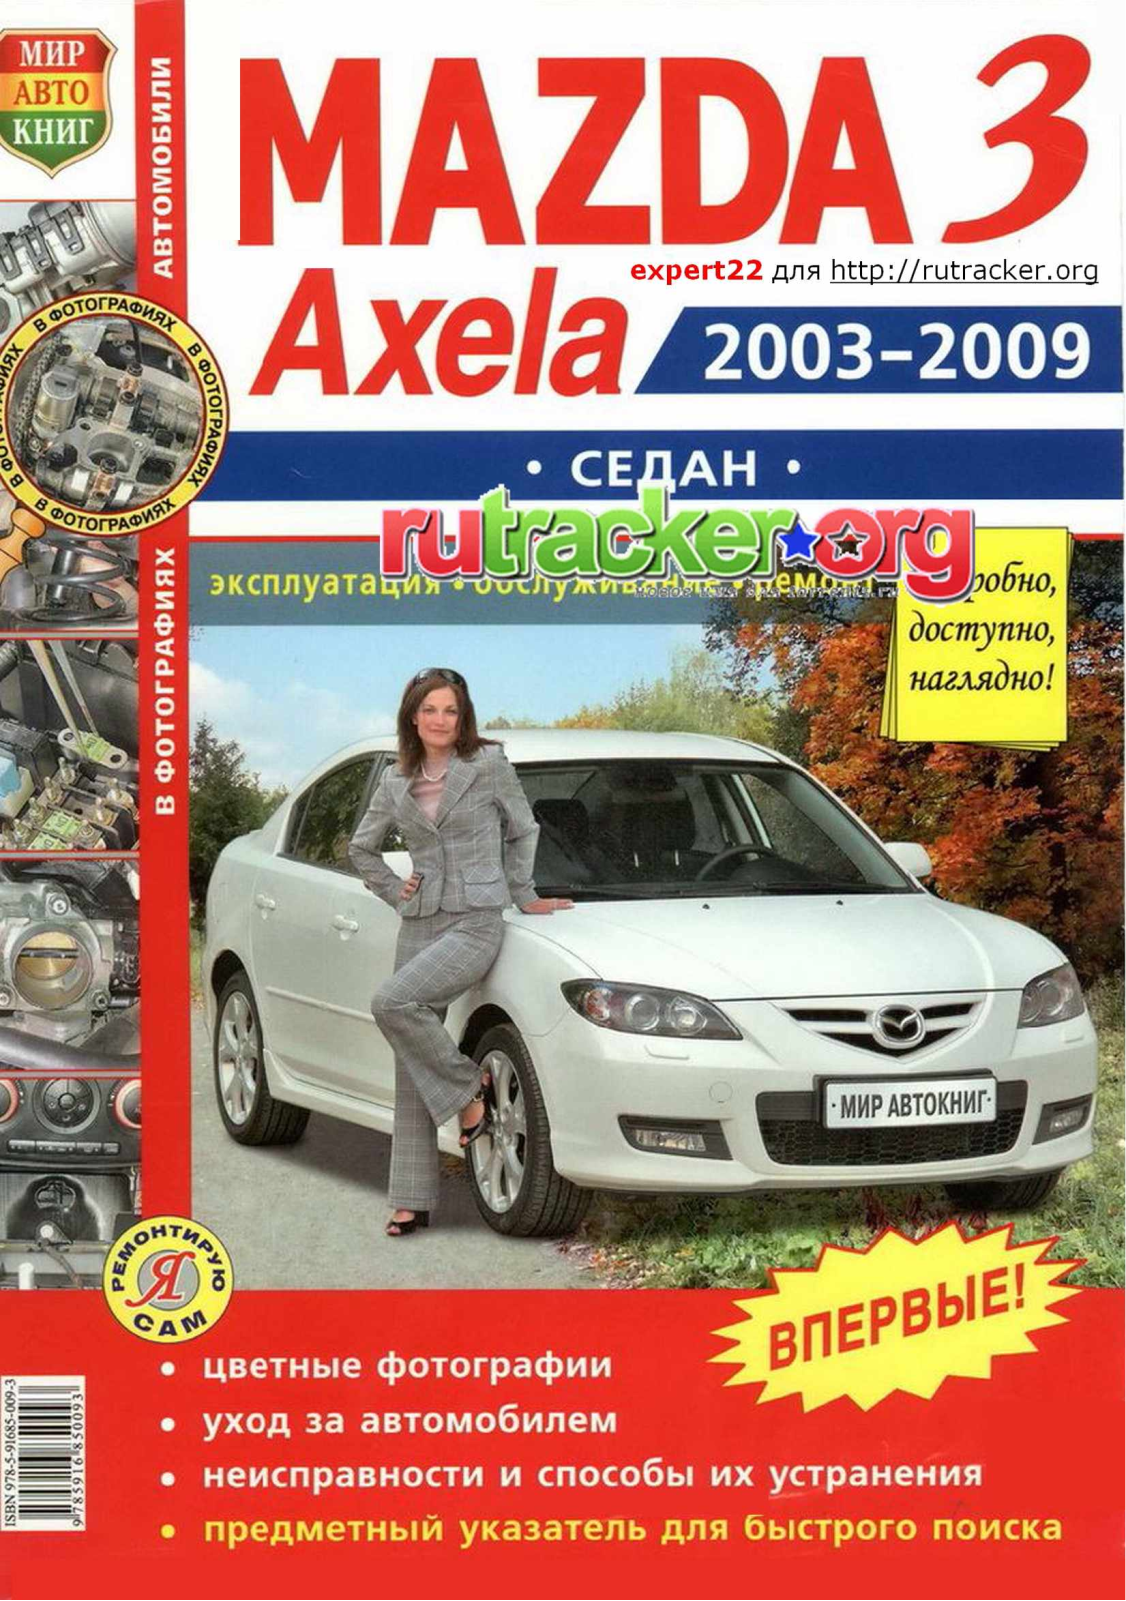 Mazda Mazda 3 Axela 2003-2009 User Manual